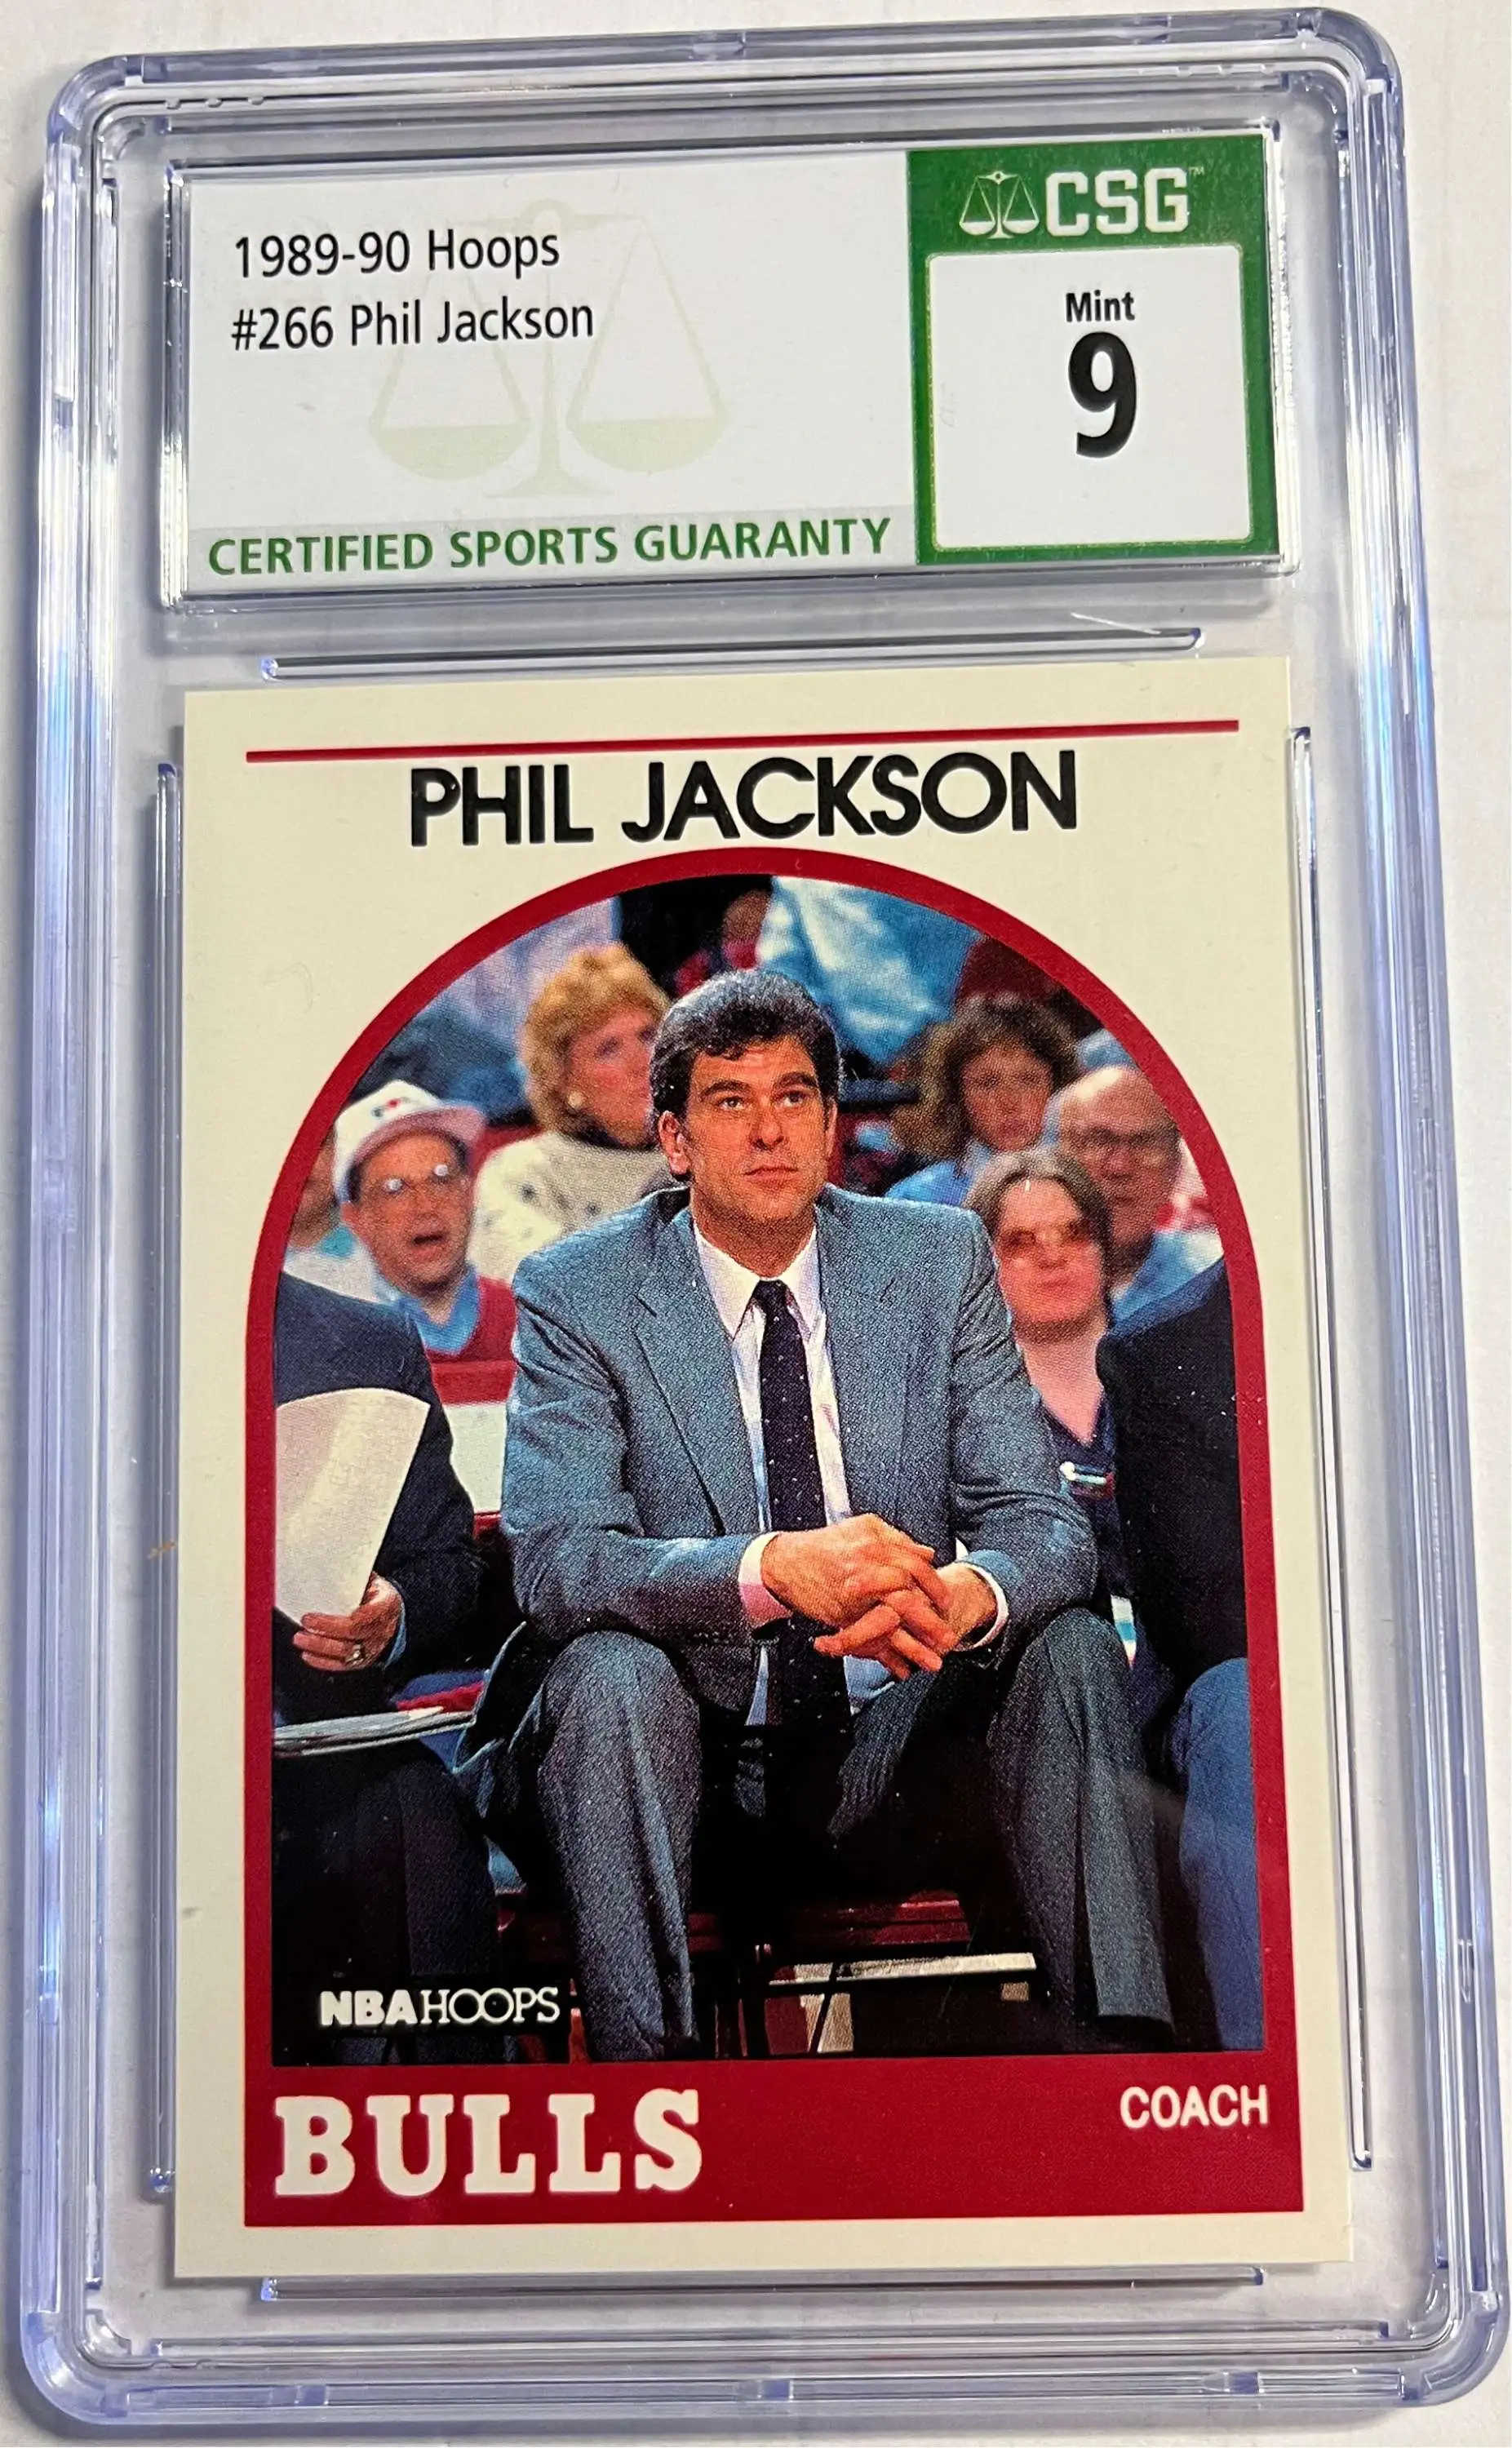 Phil Jackson Cards Chronicle Long NBA Career